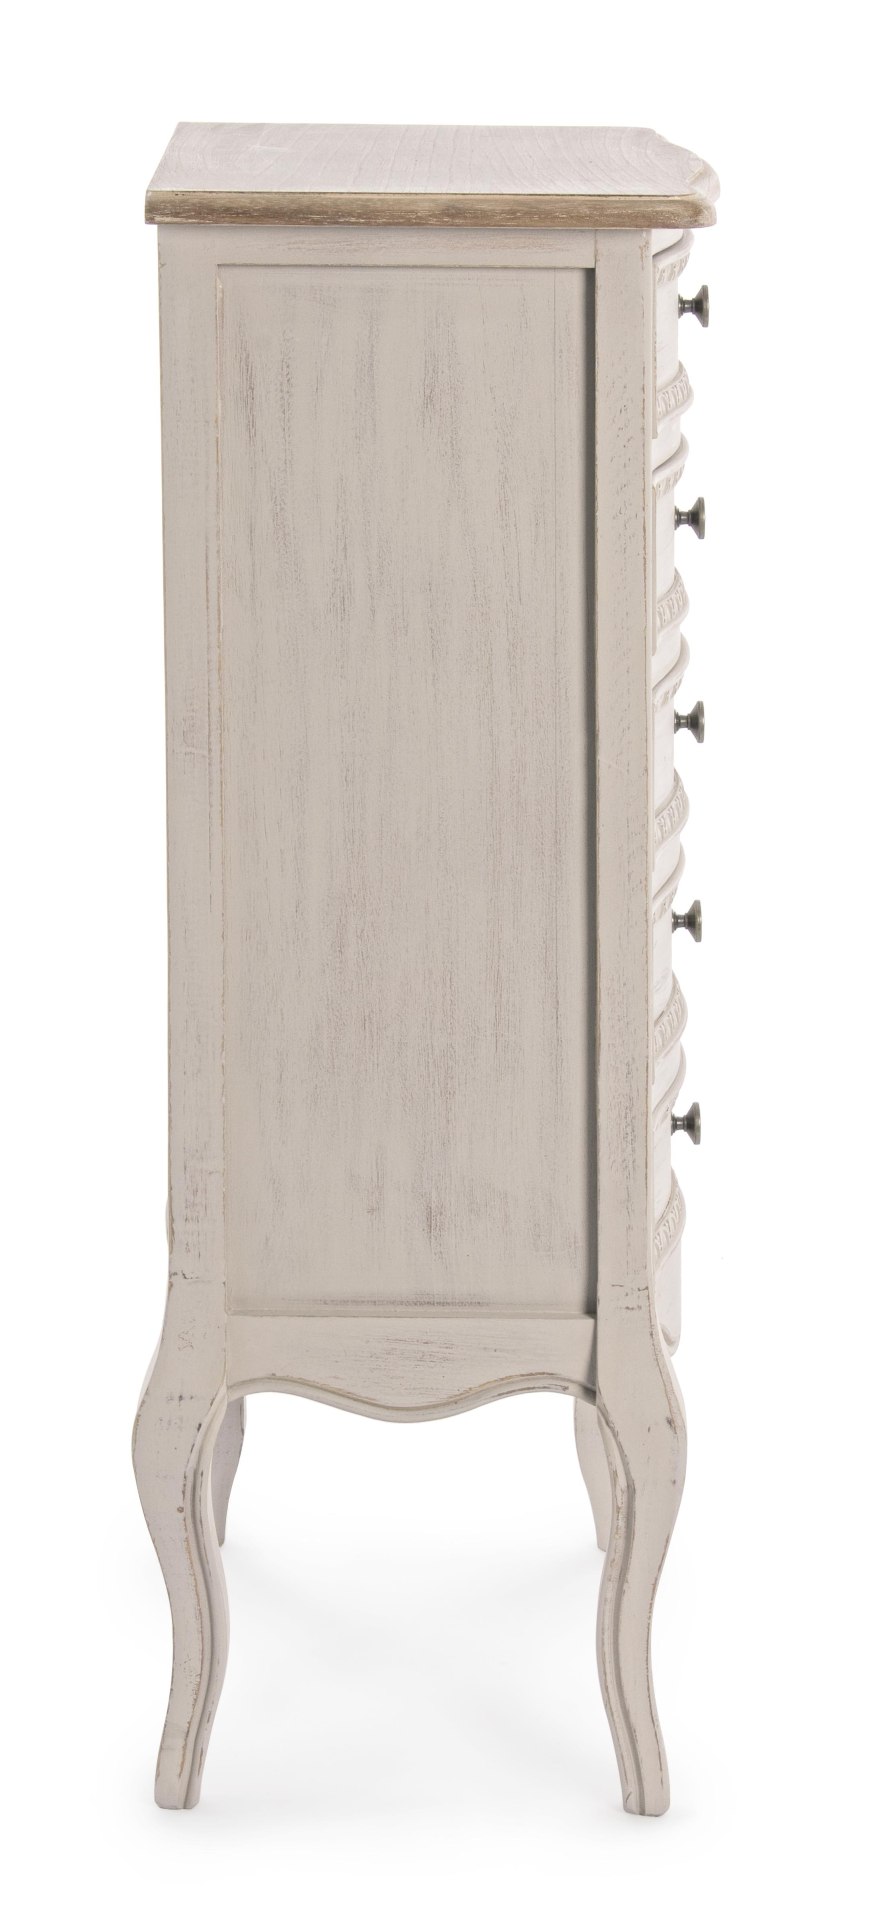 Die Kommode Clarisse überzeugt mit ihrem klassischen Design. Gefertigt wurde sie aus Paulowniaholz, welches einen grauen Farbton besitzt. Das Gestell ist auch aus Paulownia. Die Kommode verfügt über fünf Schubladen. Die Breite beträgt 48 cm.